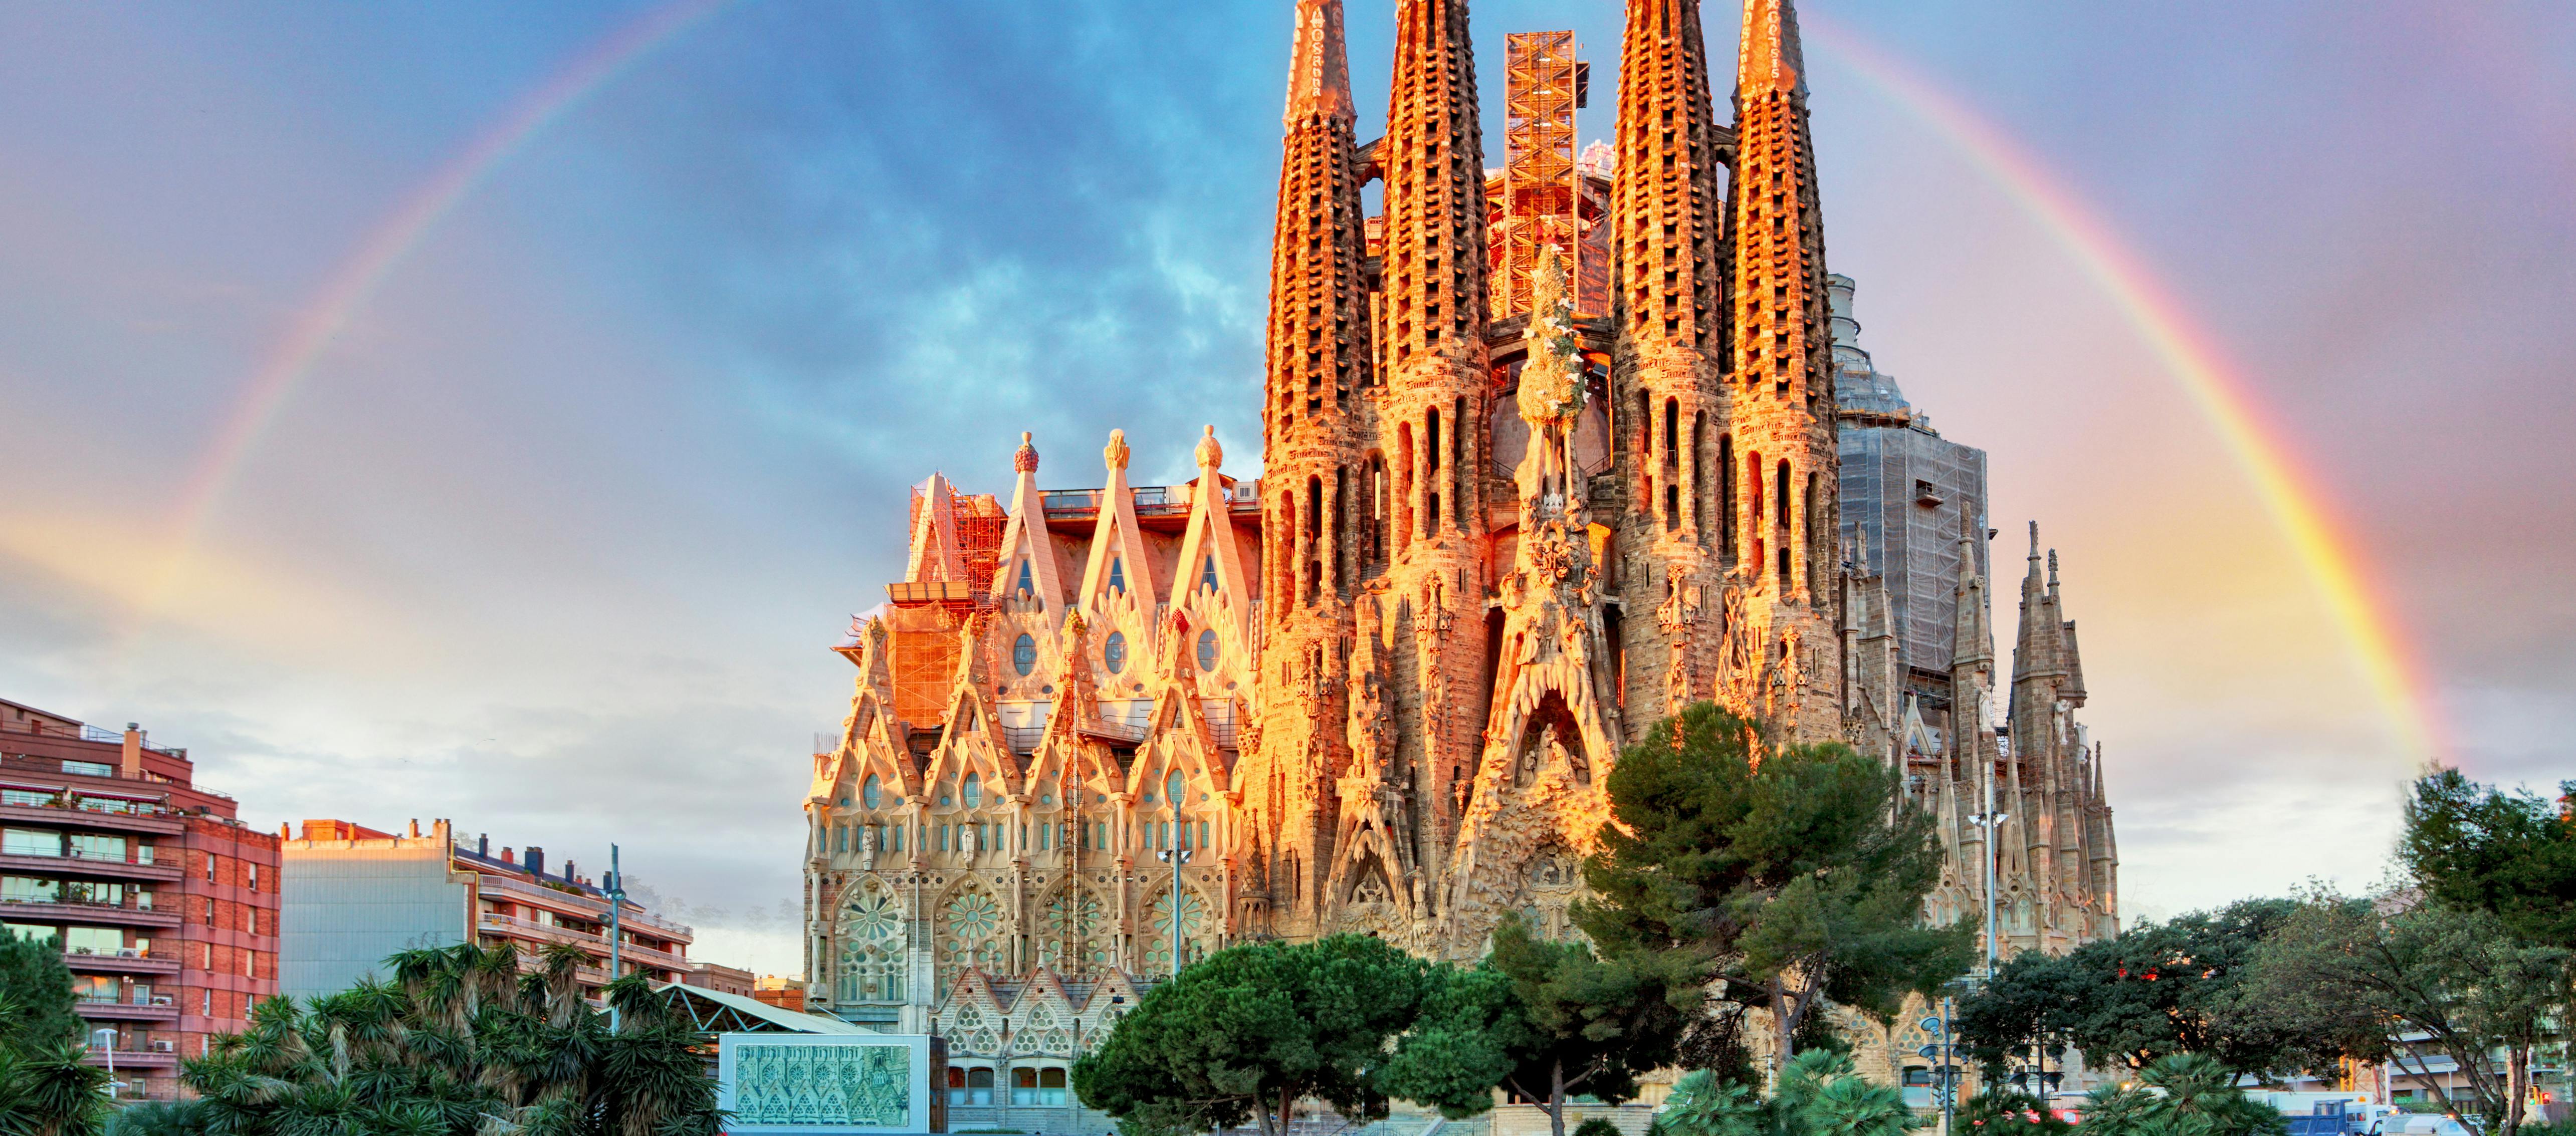 Il meglio di Barcellona, tour di un giorno con biglietto salta fila per la Sagrada Familia